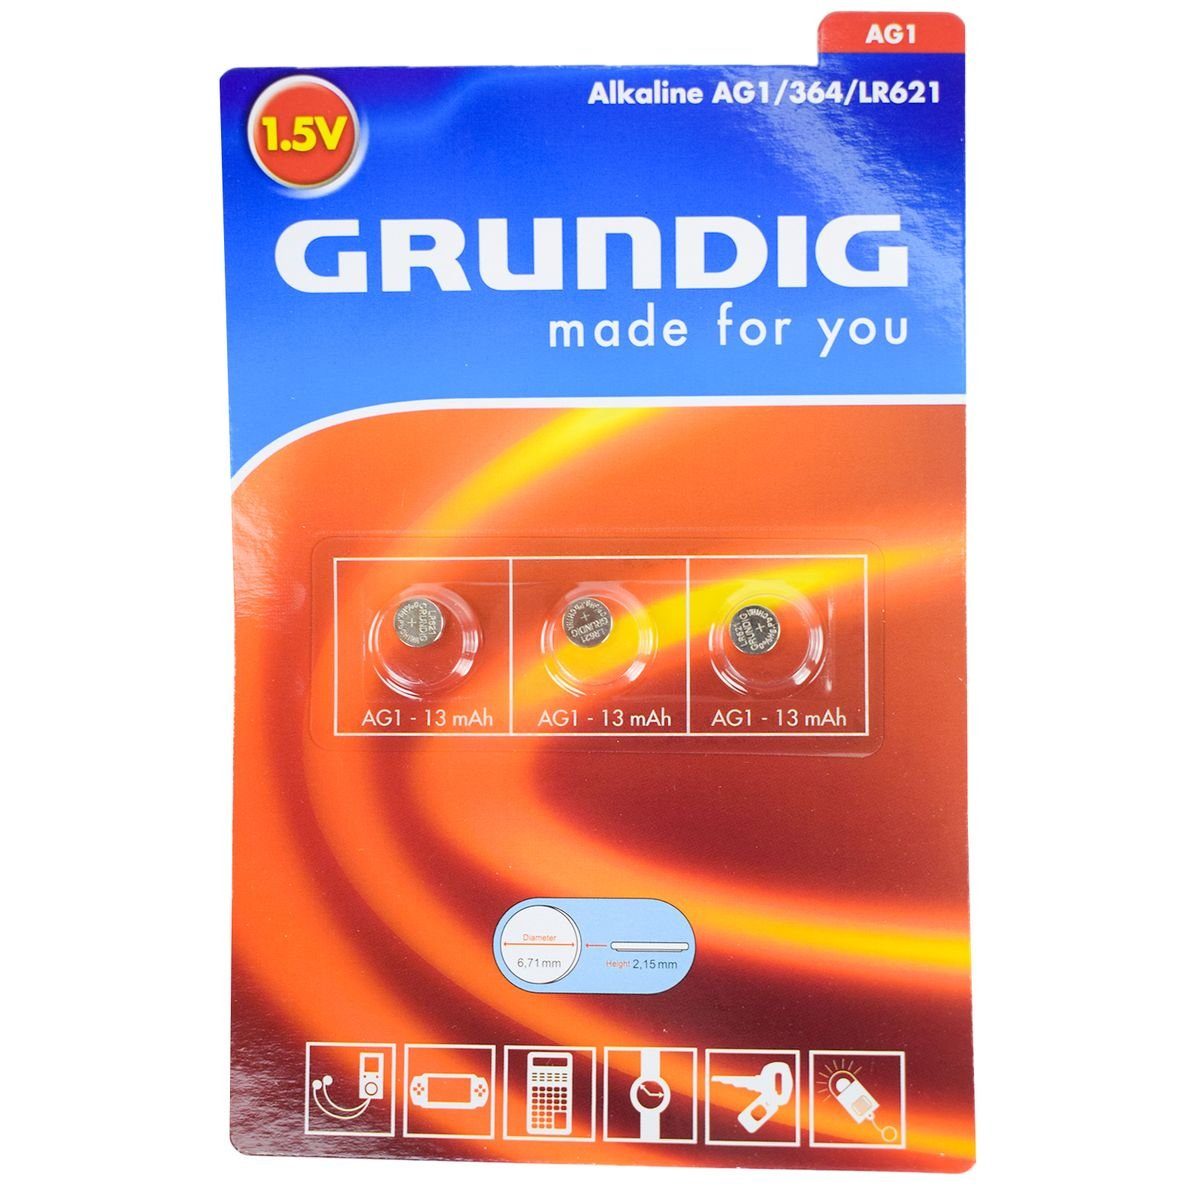 AG1 und Knopfzellenbatterien Hearing Marabellas universell (364/LR621) 3-tlg. einsetzbar Shop Aid Alkaline, Grundig Lithium Batterie, (3 St),